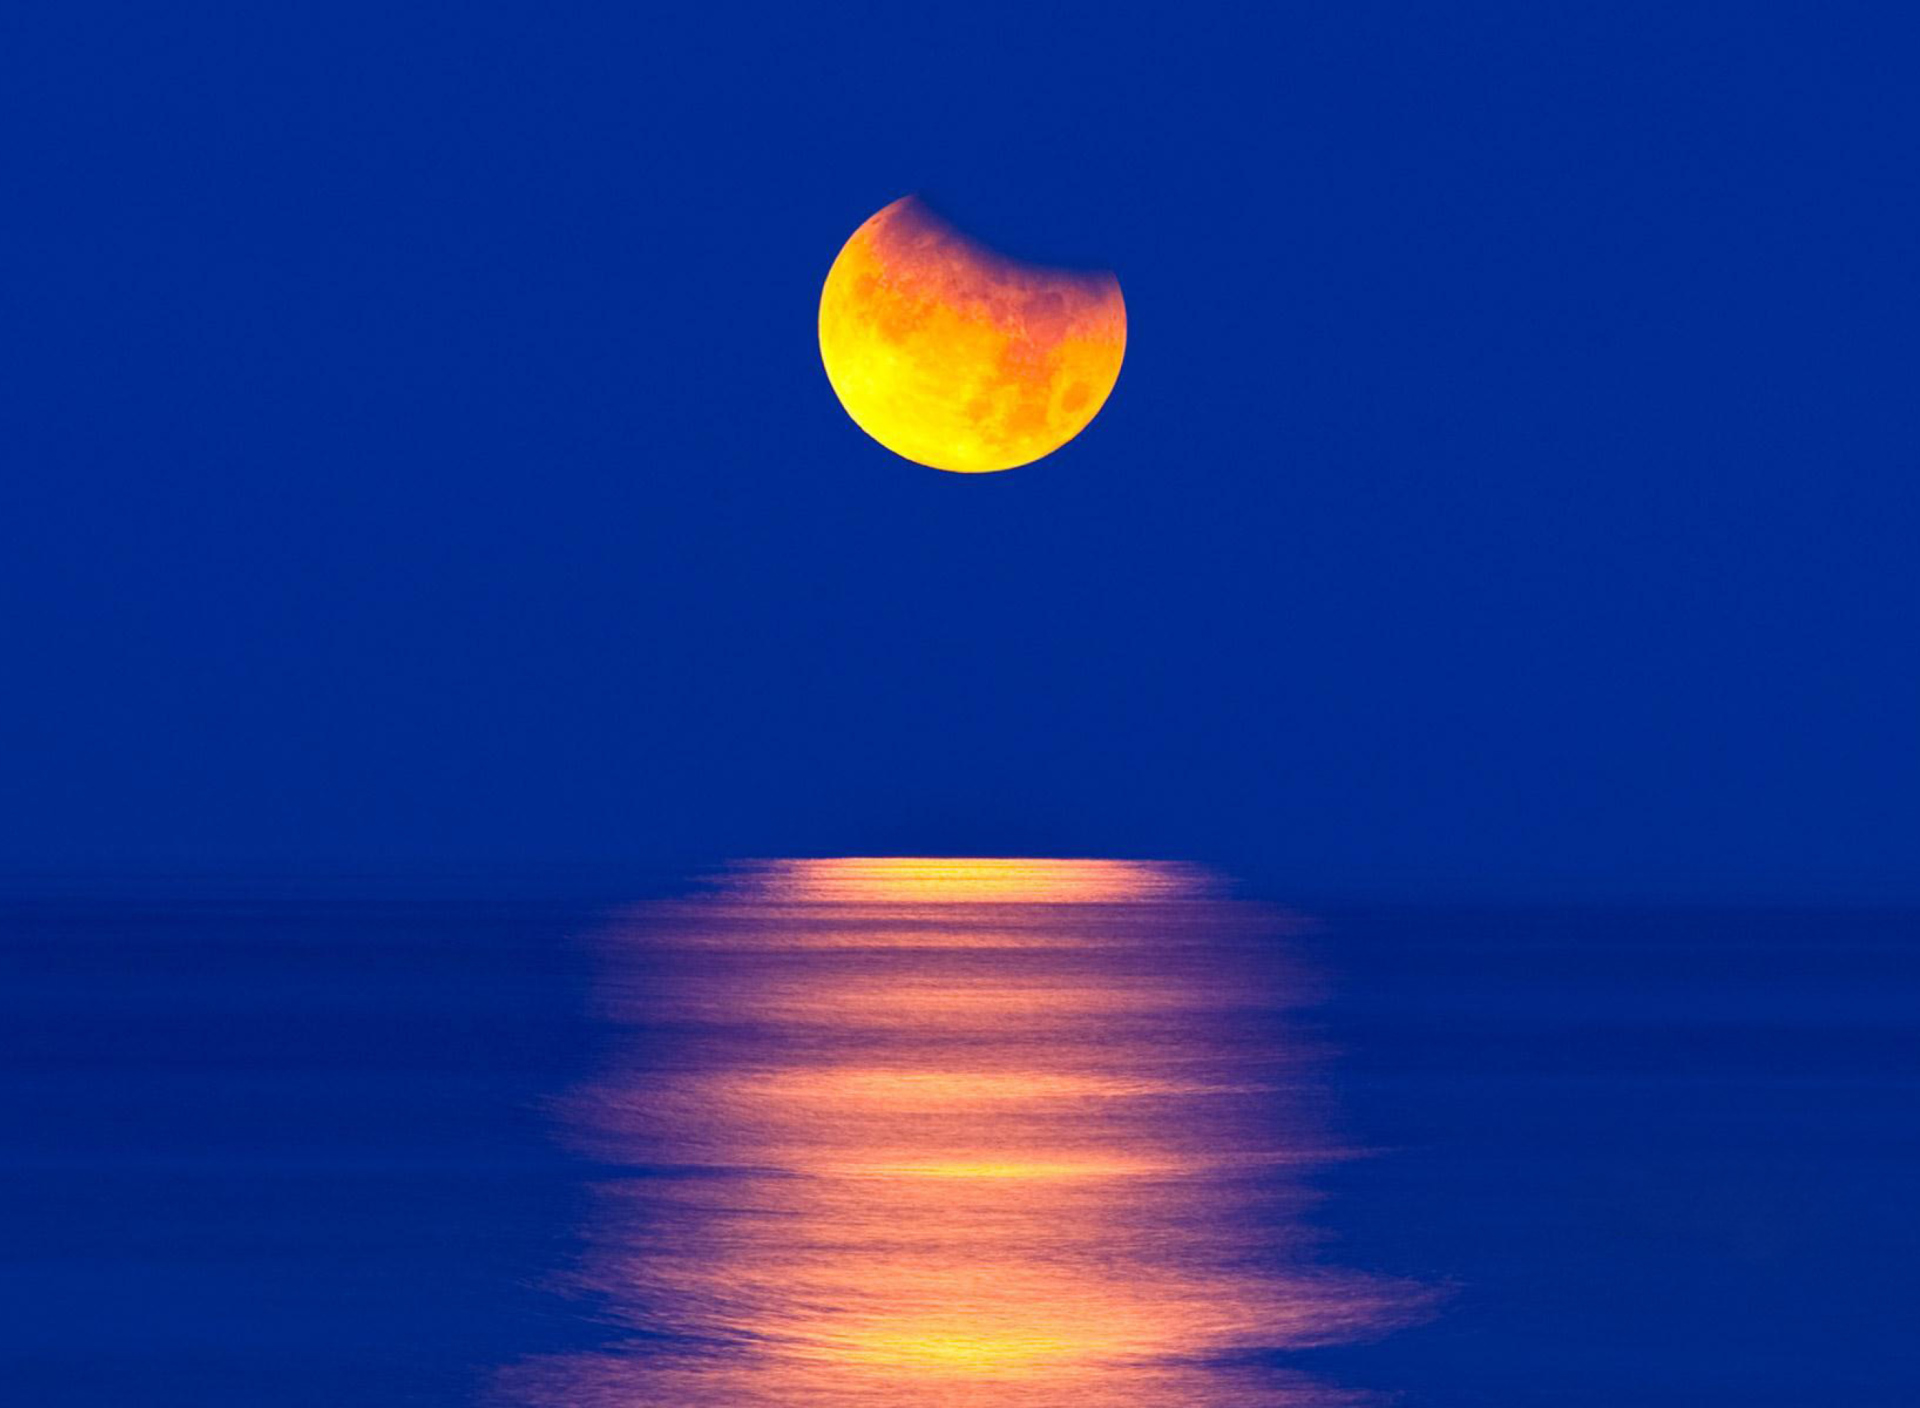 Обои Orange Moon In Blue Sky 1920x1408